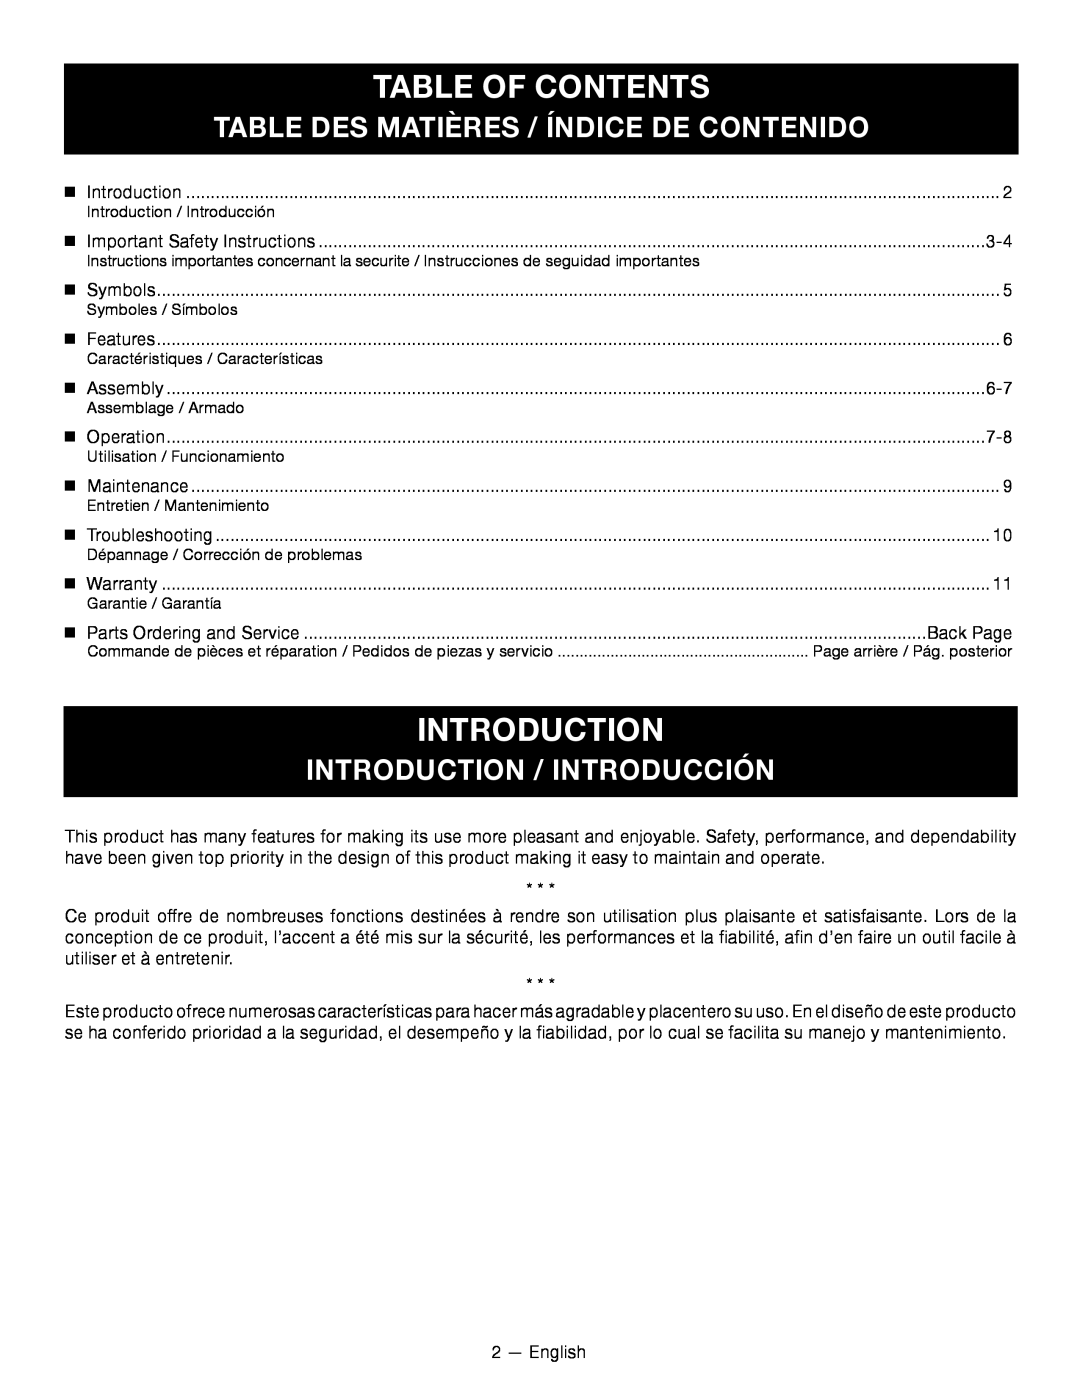 Ryobi RY24200 Table Of Contents, introduction, Table Des Matières / Índice De Contenido, Introduction / Introducción 